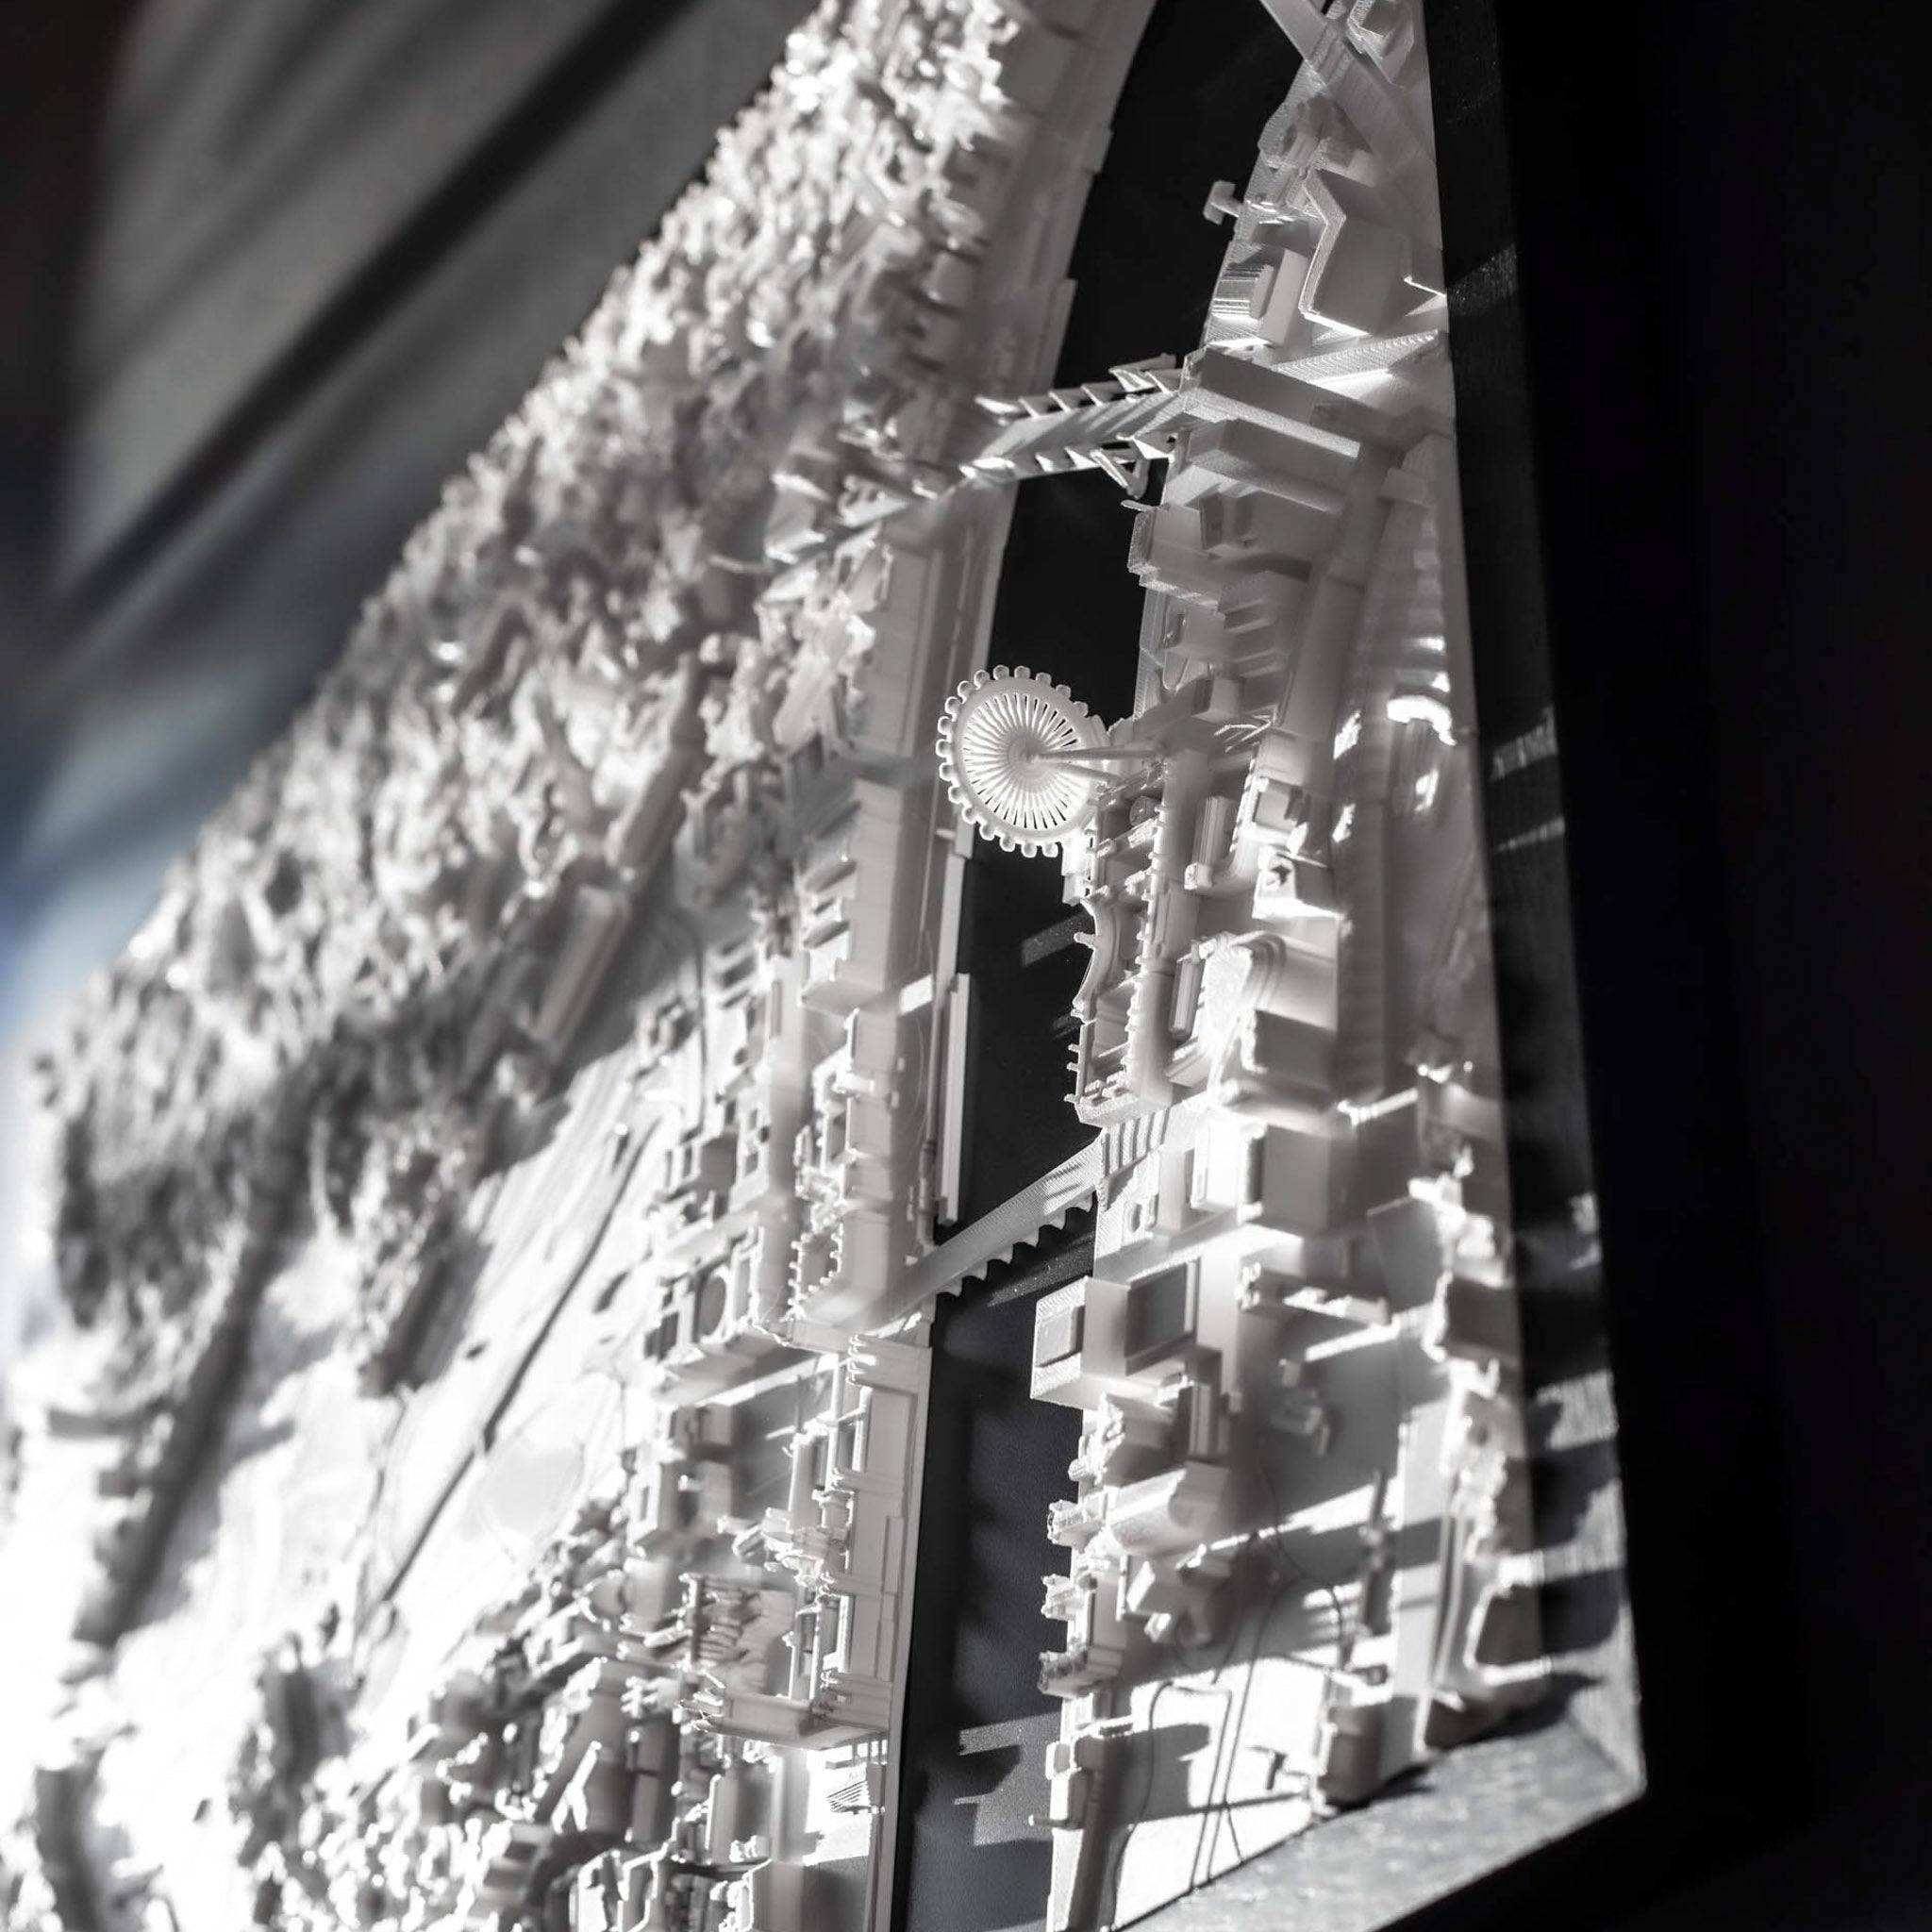 London Frame 3D City Model Europe, Frame - CITYFRAMES